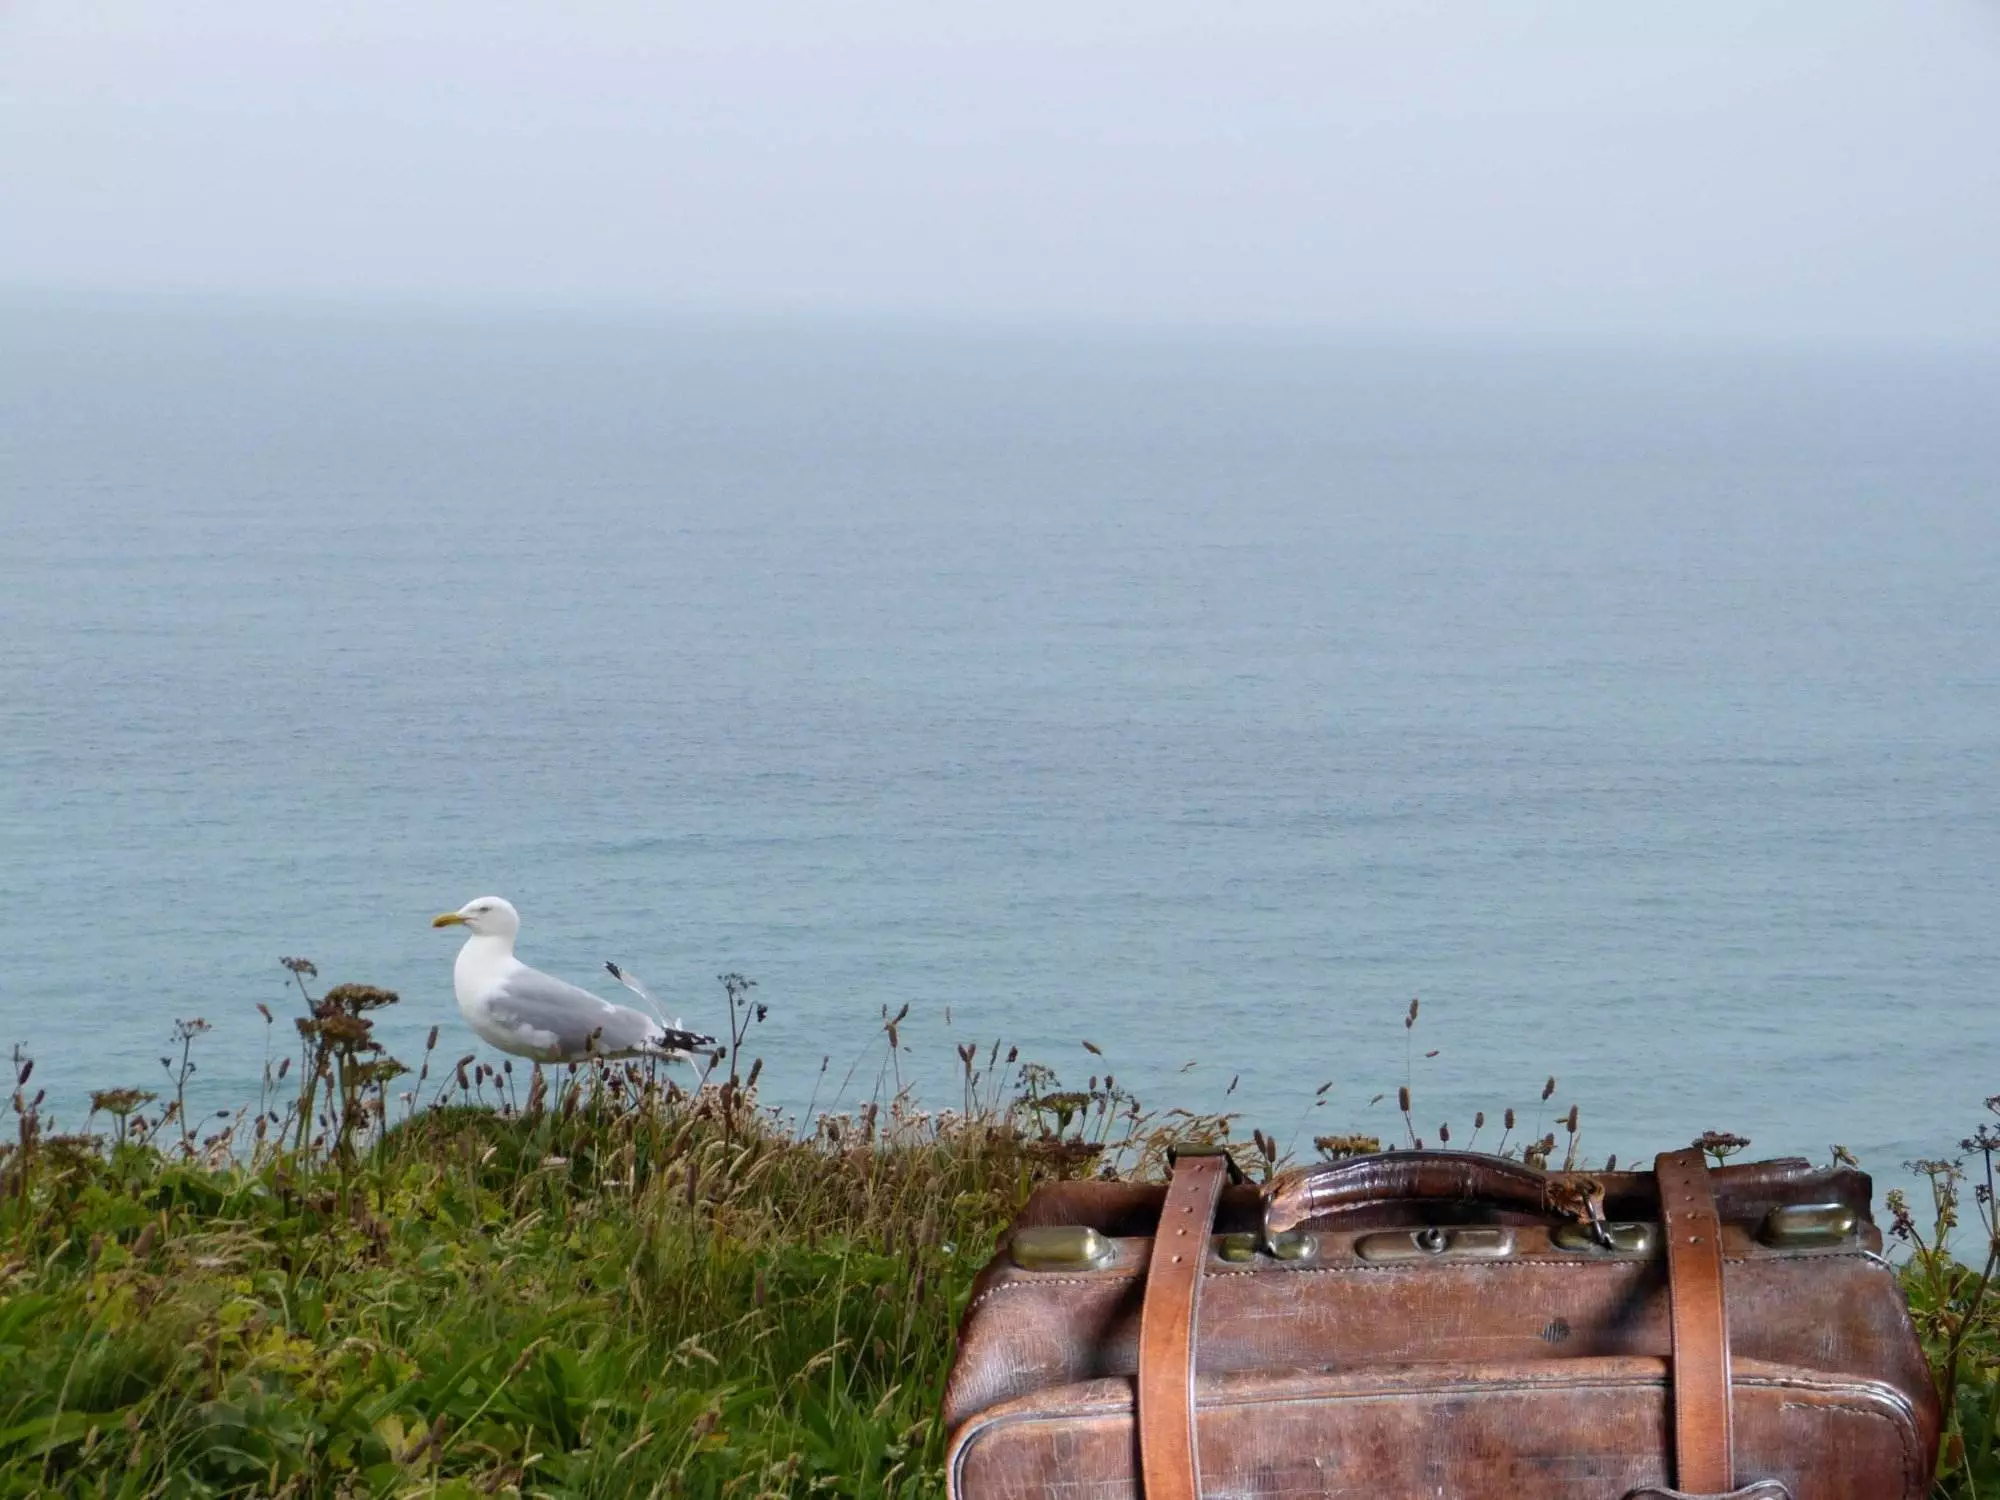 Ein brauner Koffer, der auf einem grasbewachsenen Hügel neben dem Meer steht.